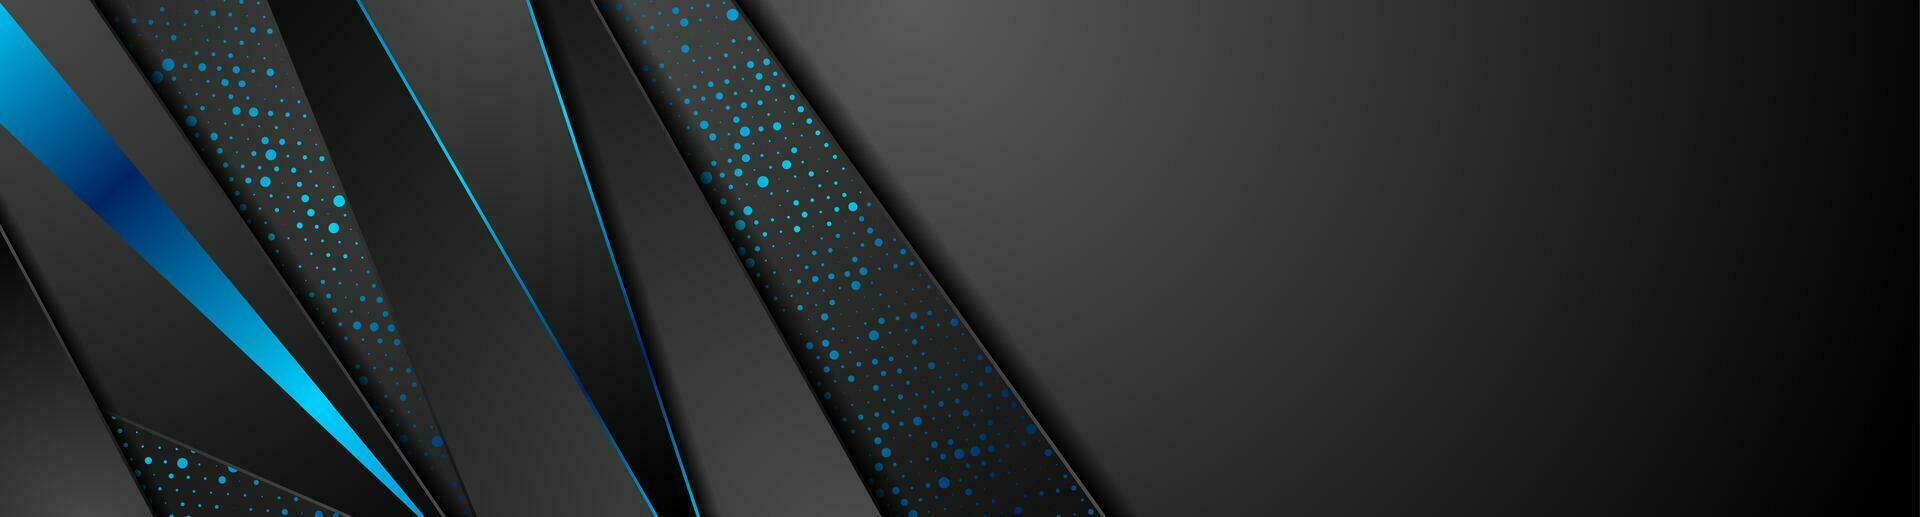 svart teknologi abstrakt baner med blå prickar vektor